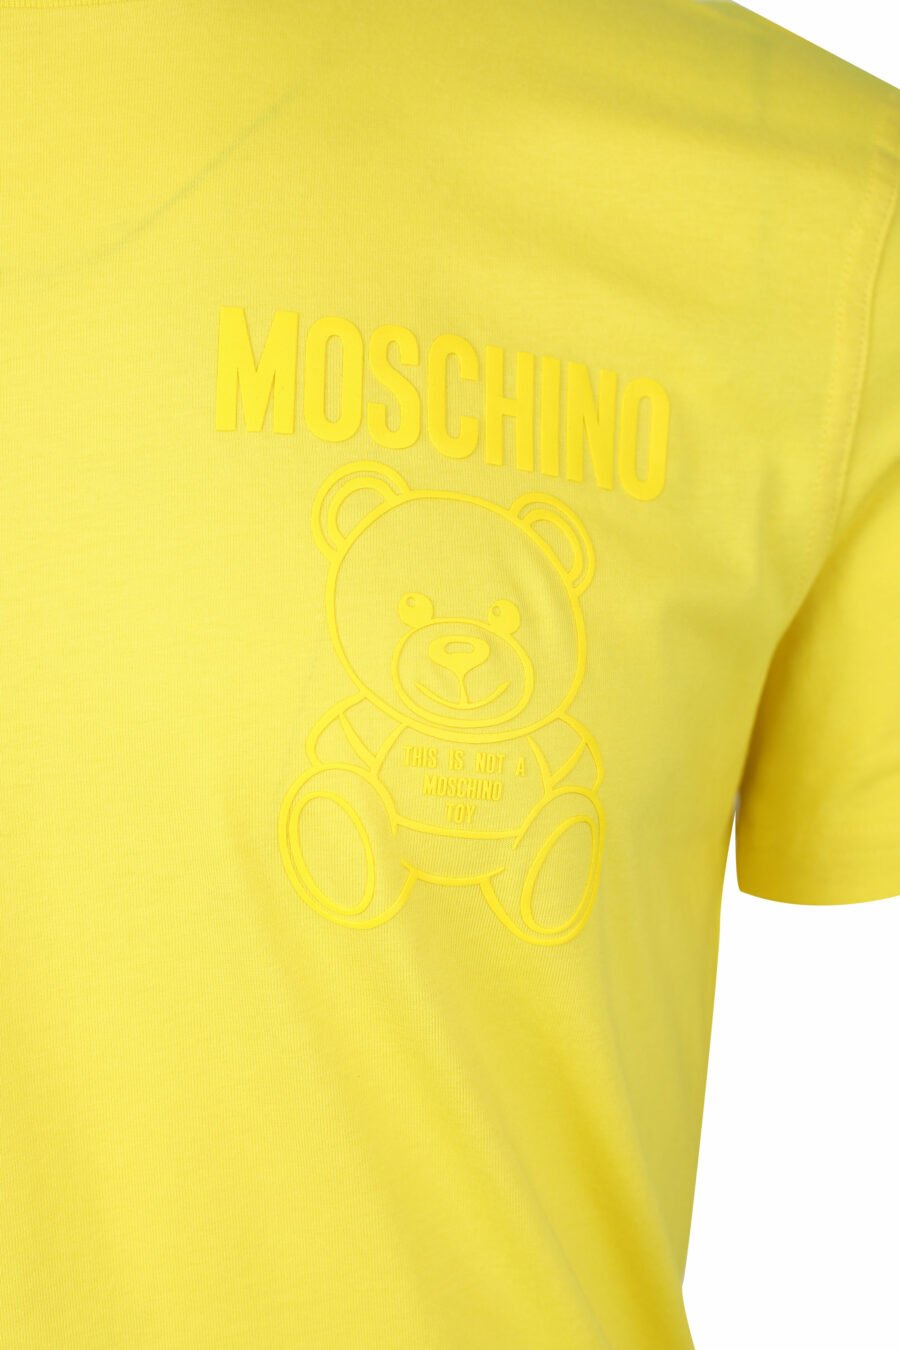 T-shirt amarela com minilogo de urso monocromático - IMG 1413